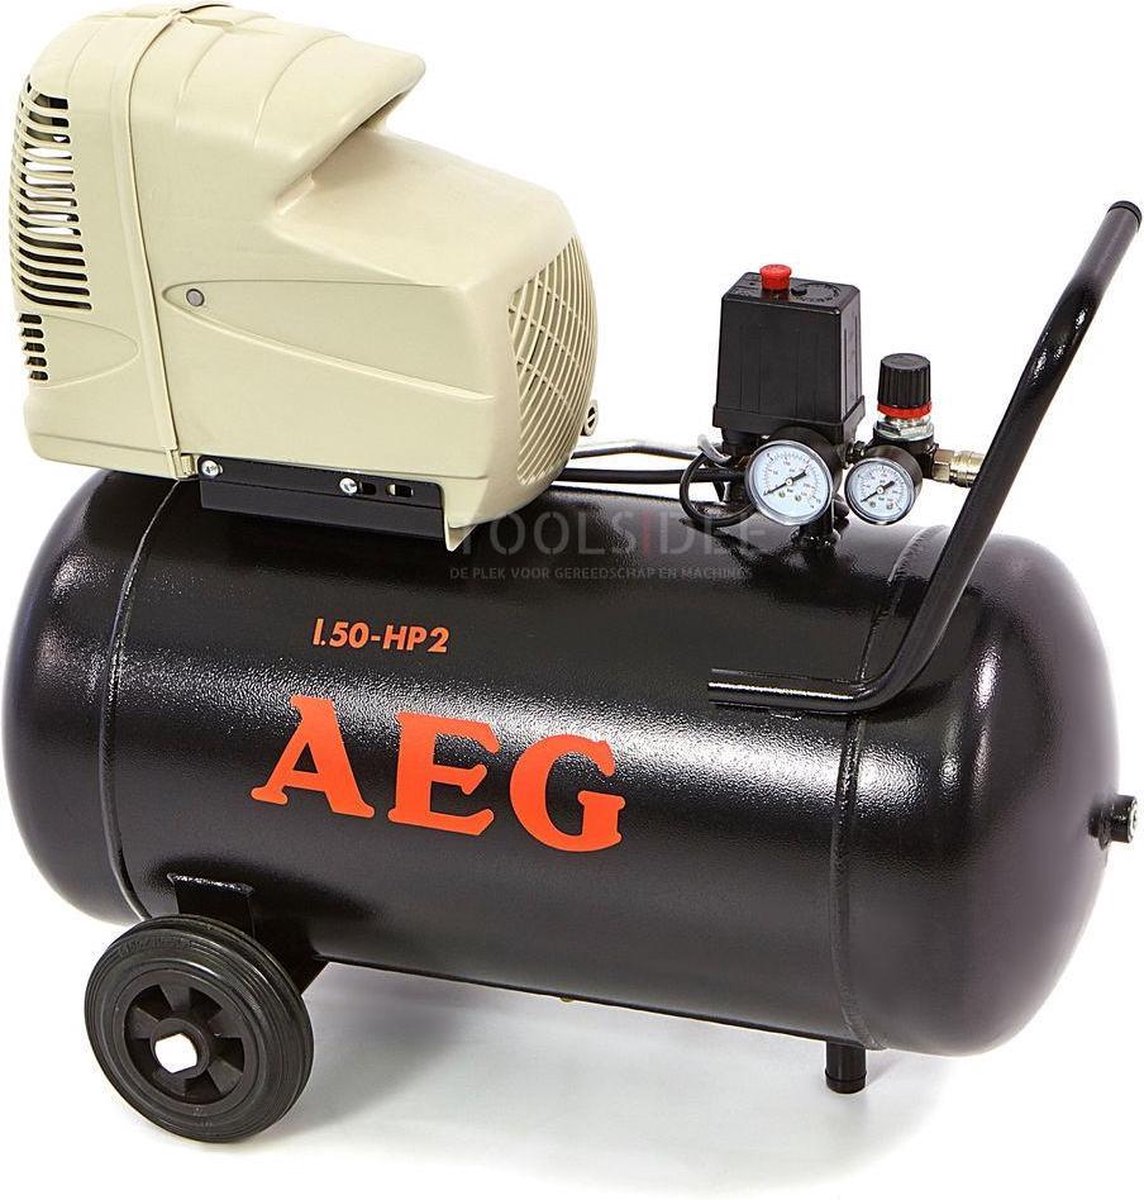 AEG 50 Liter Compressor | bol.com